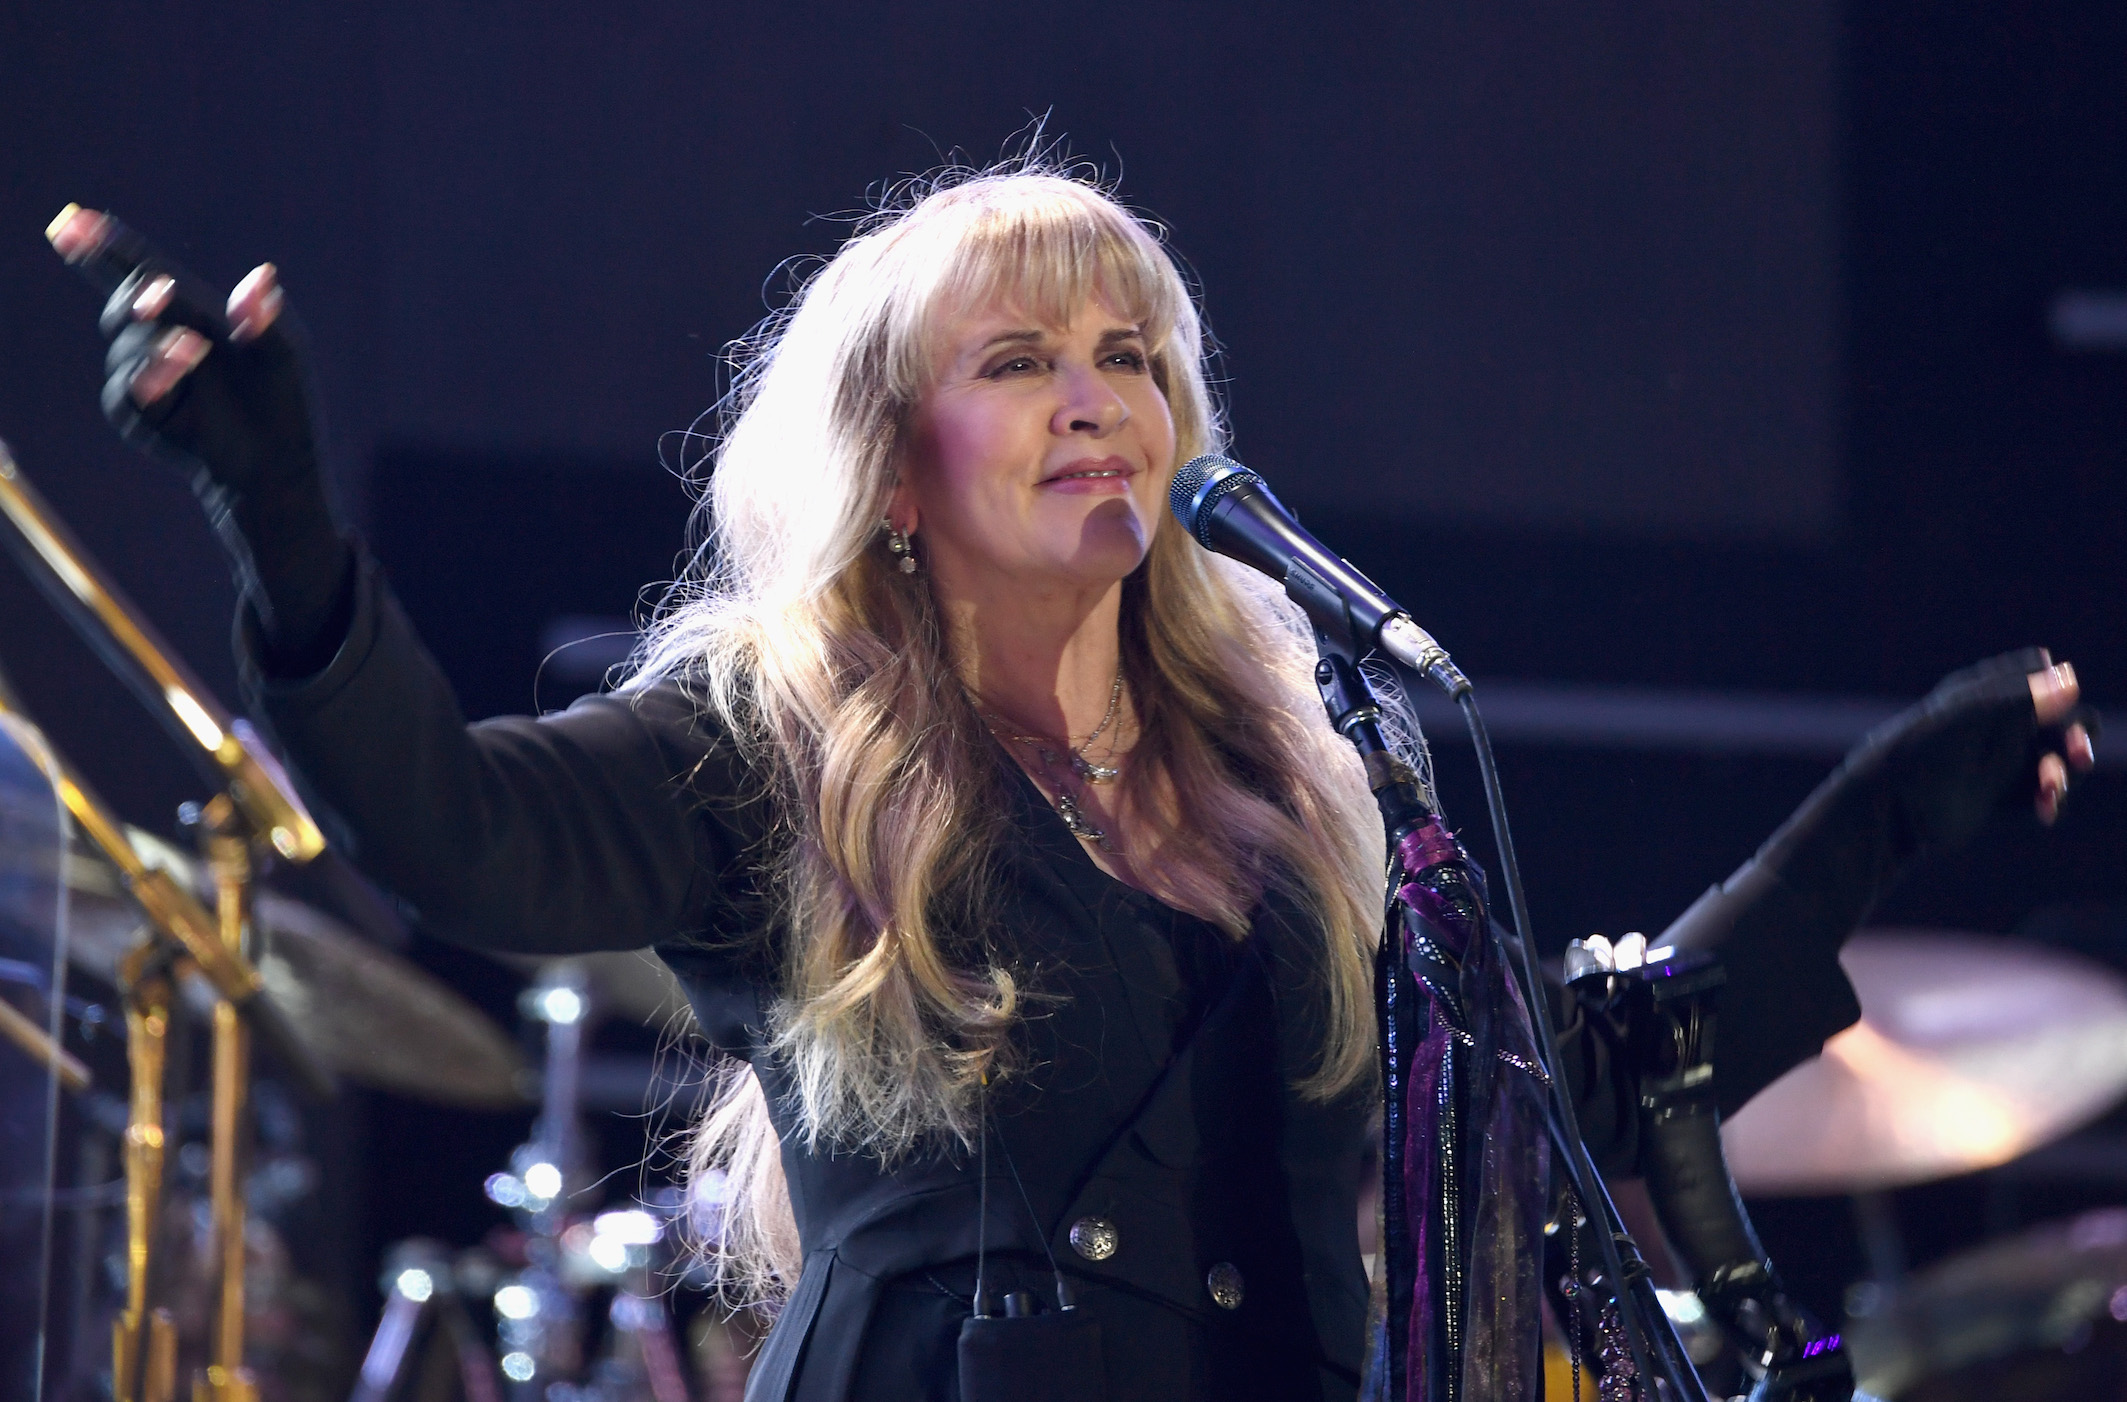 Stevie Nicks of Fleetwood Mac performs at the 2018 iHeartRadio Music Fesitval in Las Vegas, Nevada